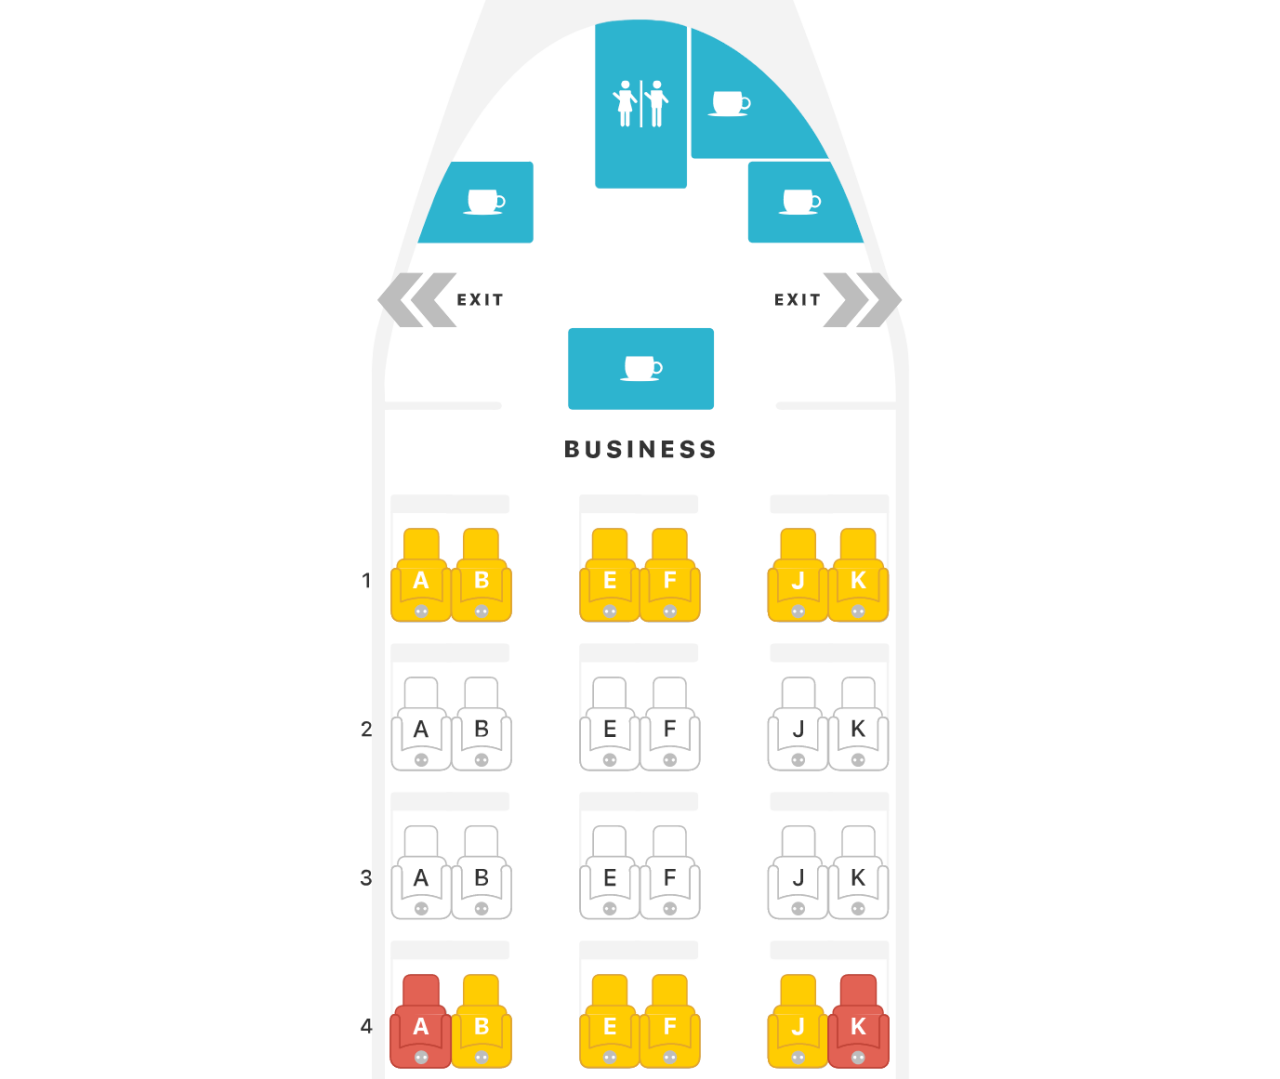 Qatar Business Class 777-300ER Seat Map